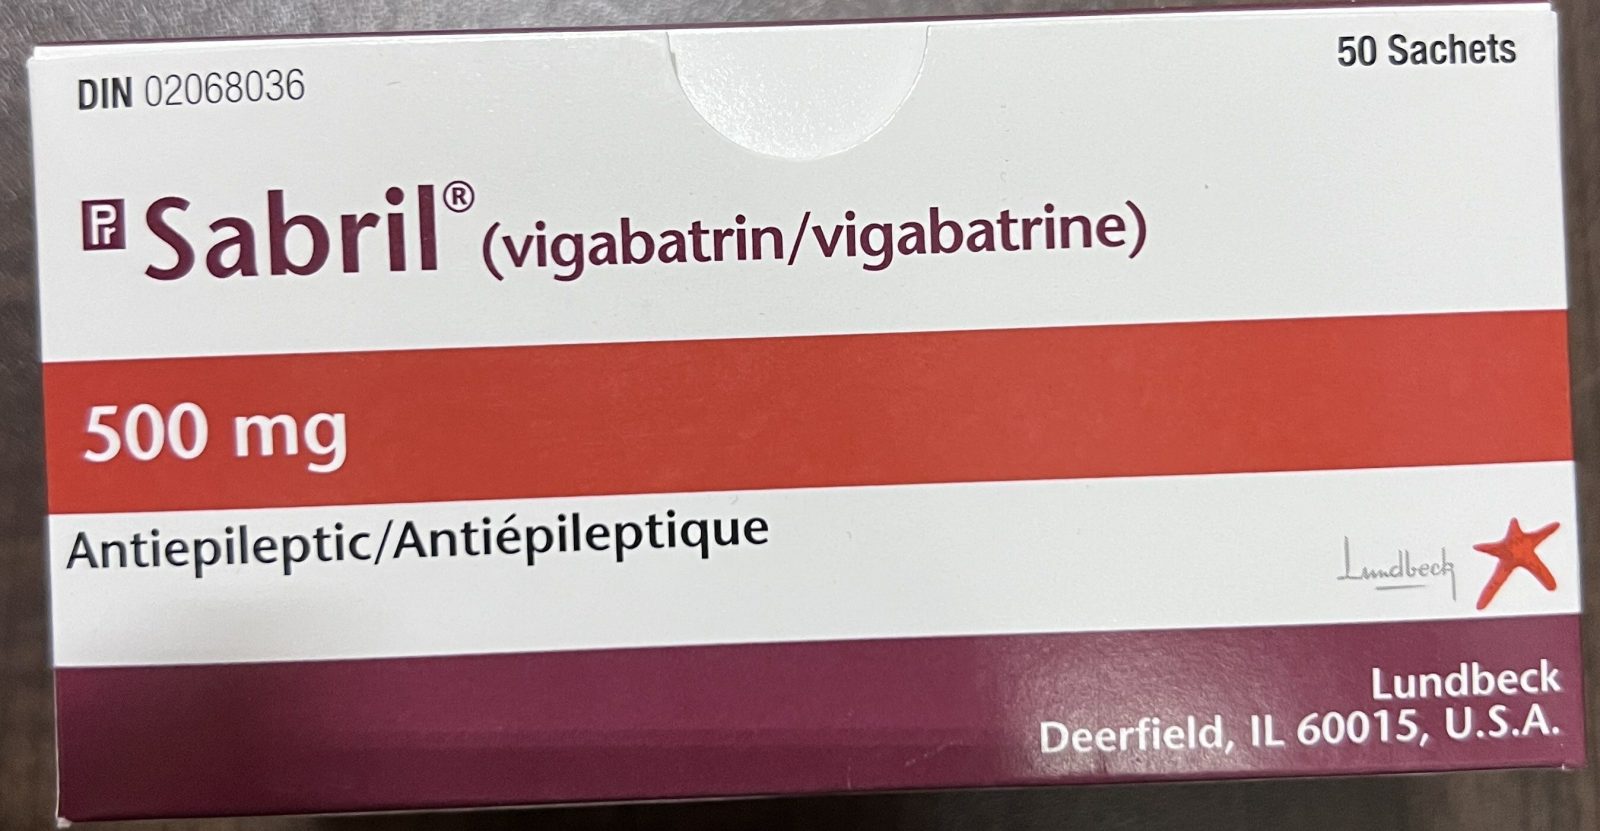 Avis public sur des lots de vigabatrin contenant des traces d’un autre médicament